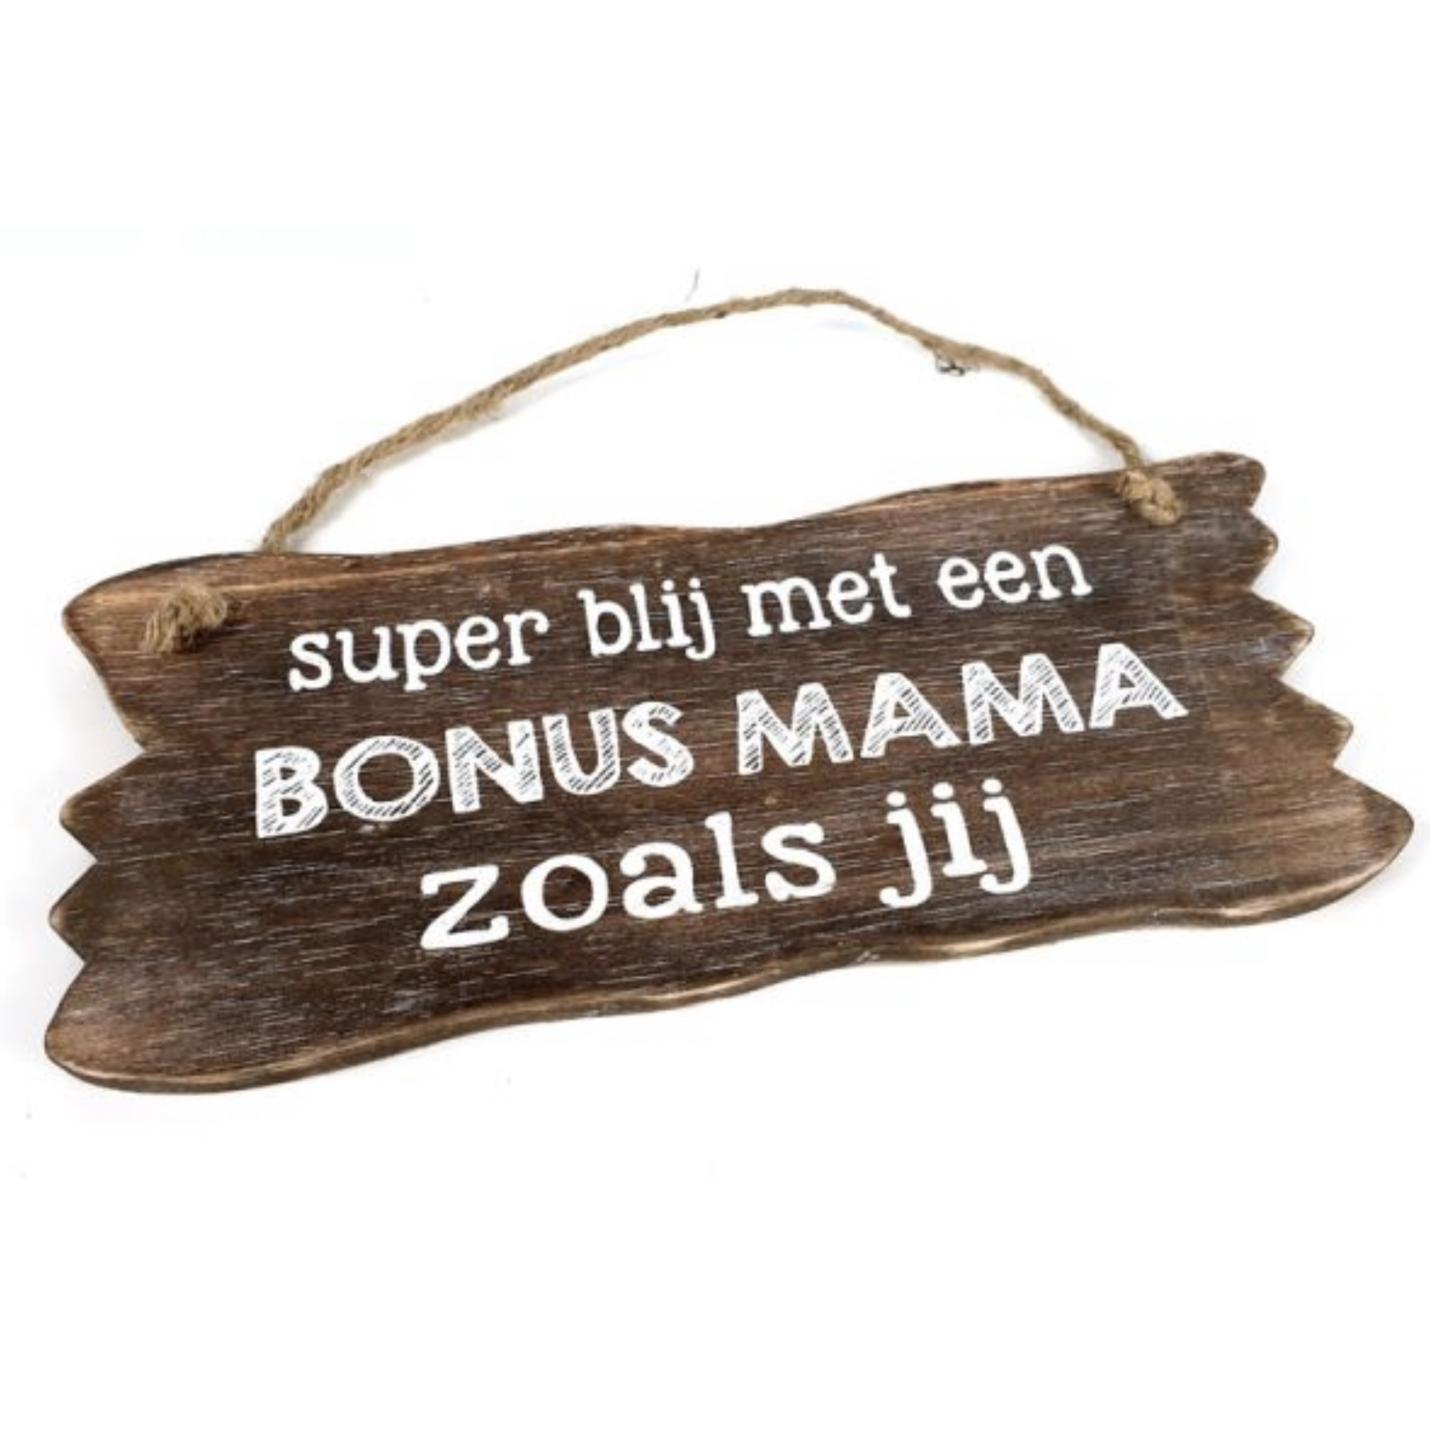 Bonus mama